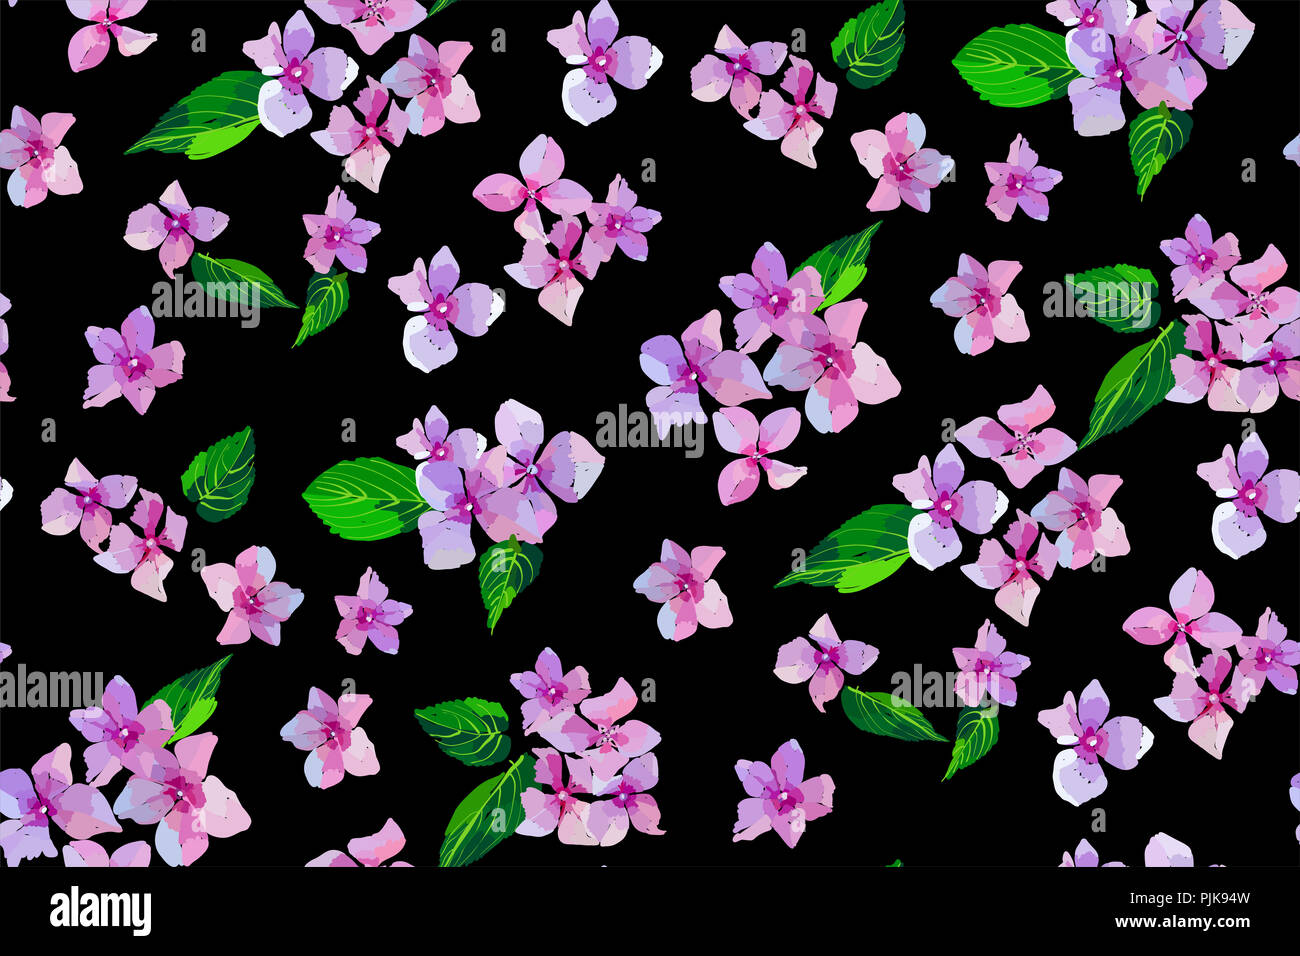 Rose fleurs Hortensia jardin modèle homogène. Illustration botanique dans un style dessiné à la main. Fleurs lilas isolés. Vector floral design pour les cosmétiques Banque D'Images